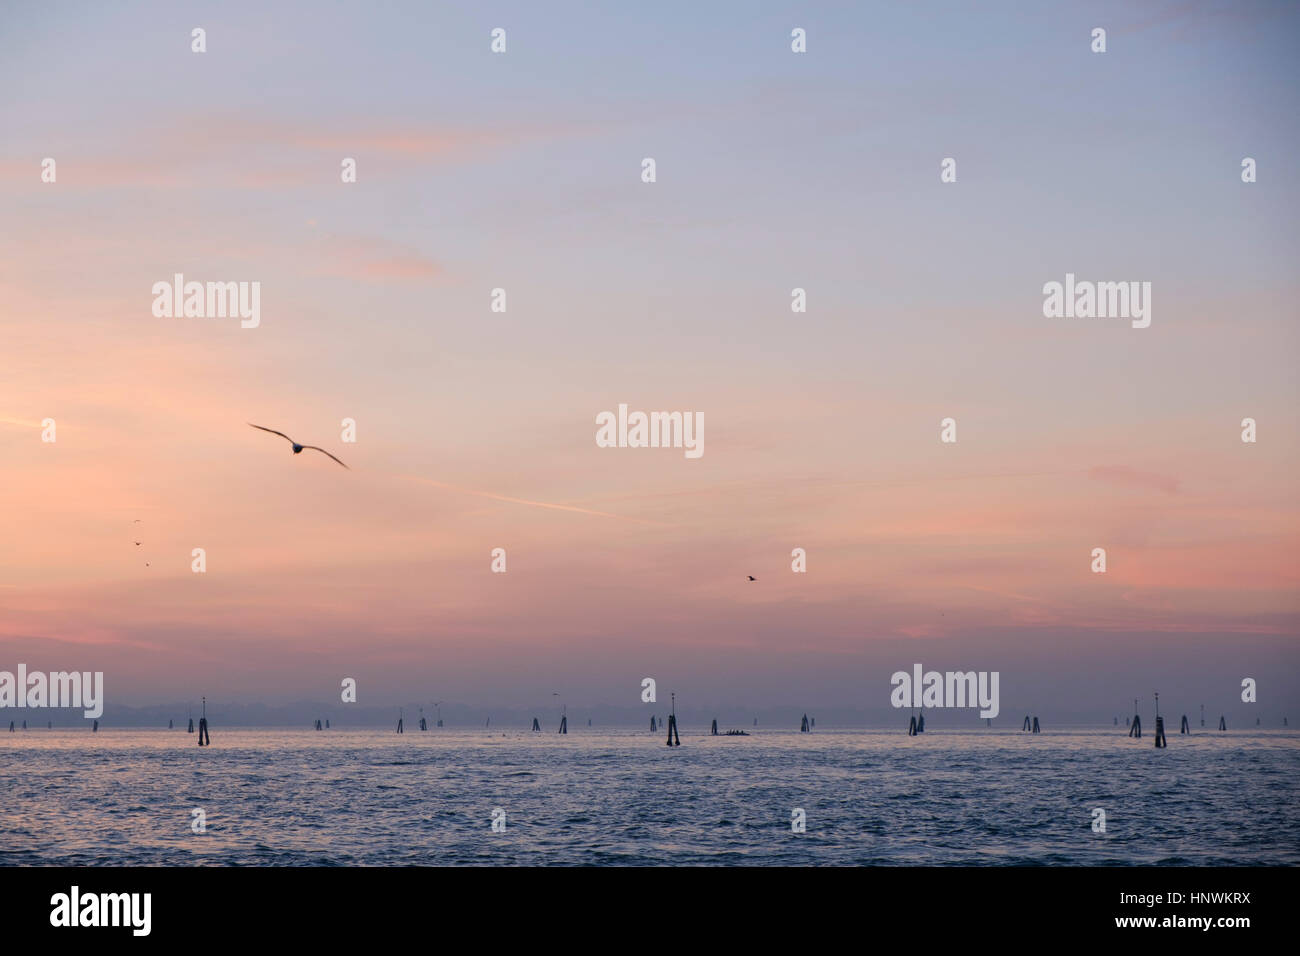 View across the lagoon at dusk. Venice, Italy Stock Photo